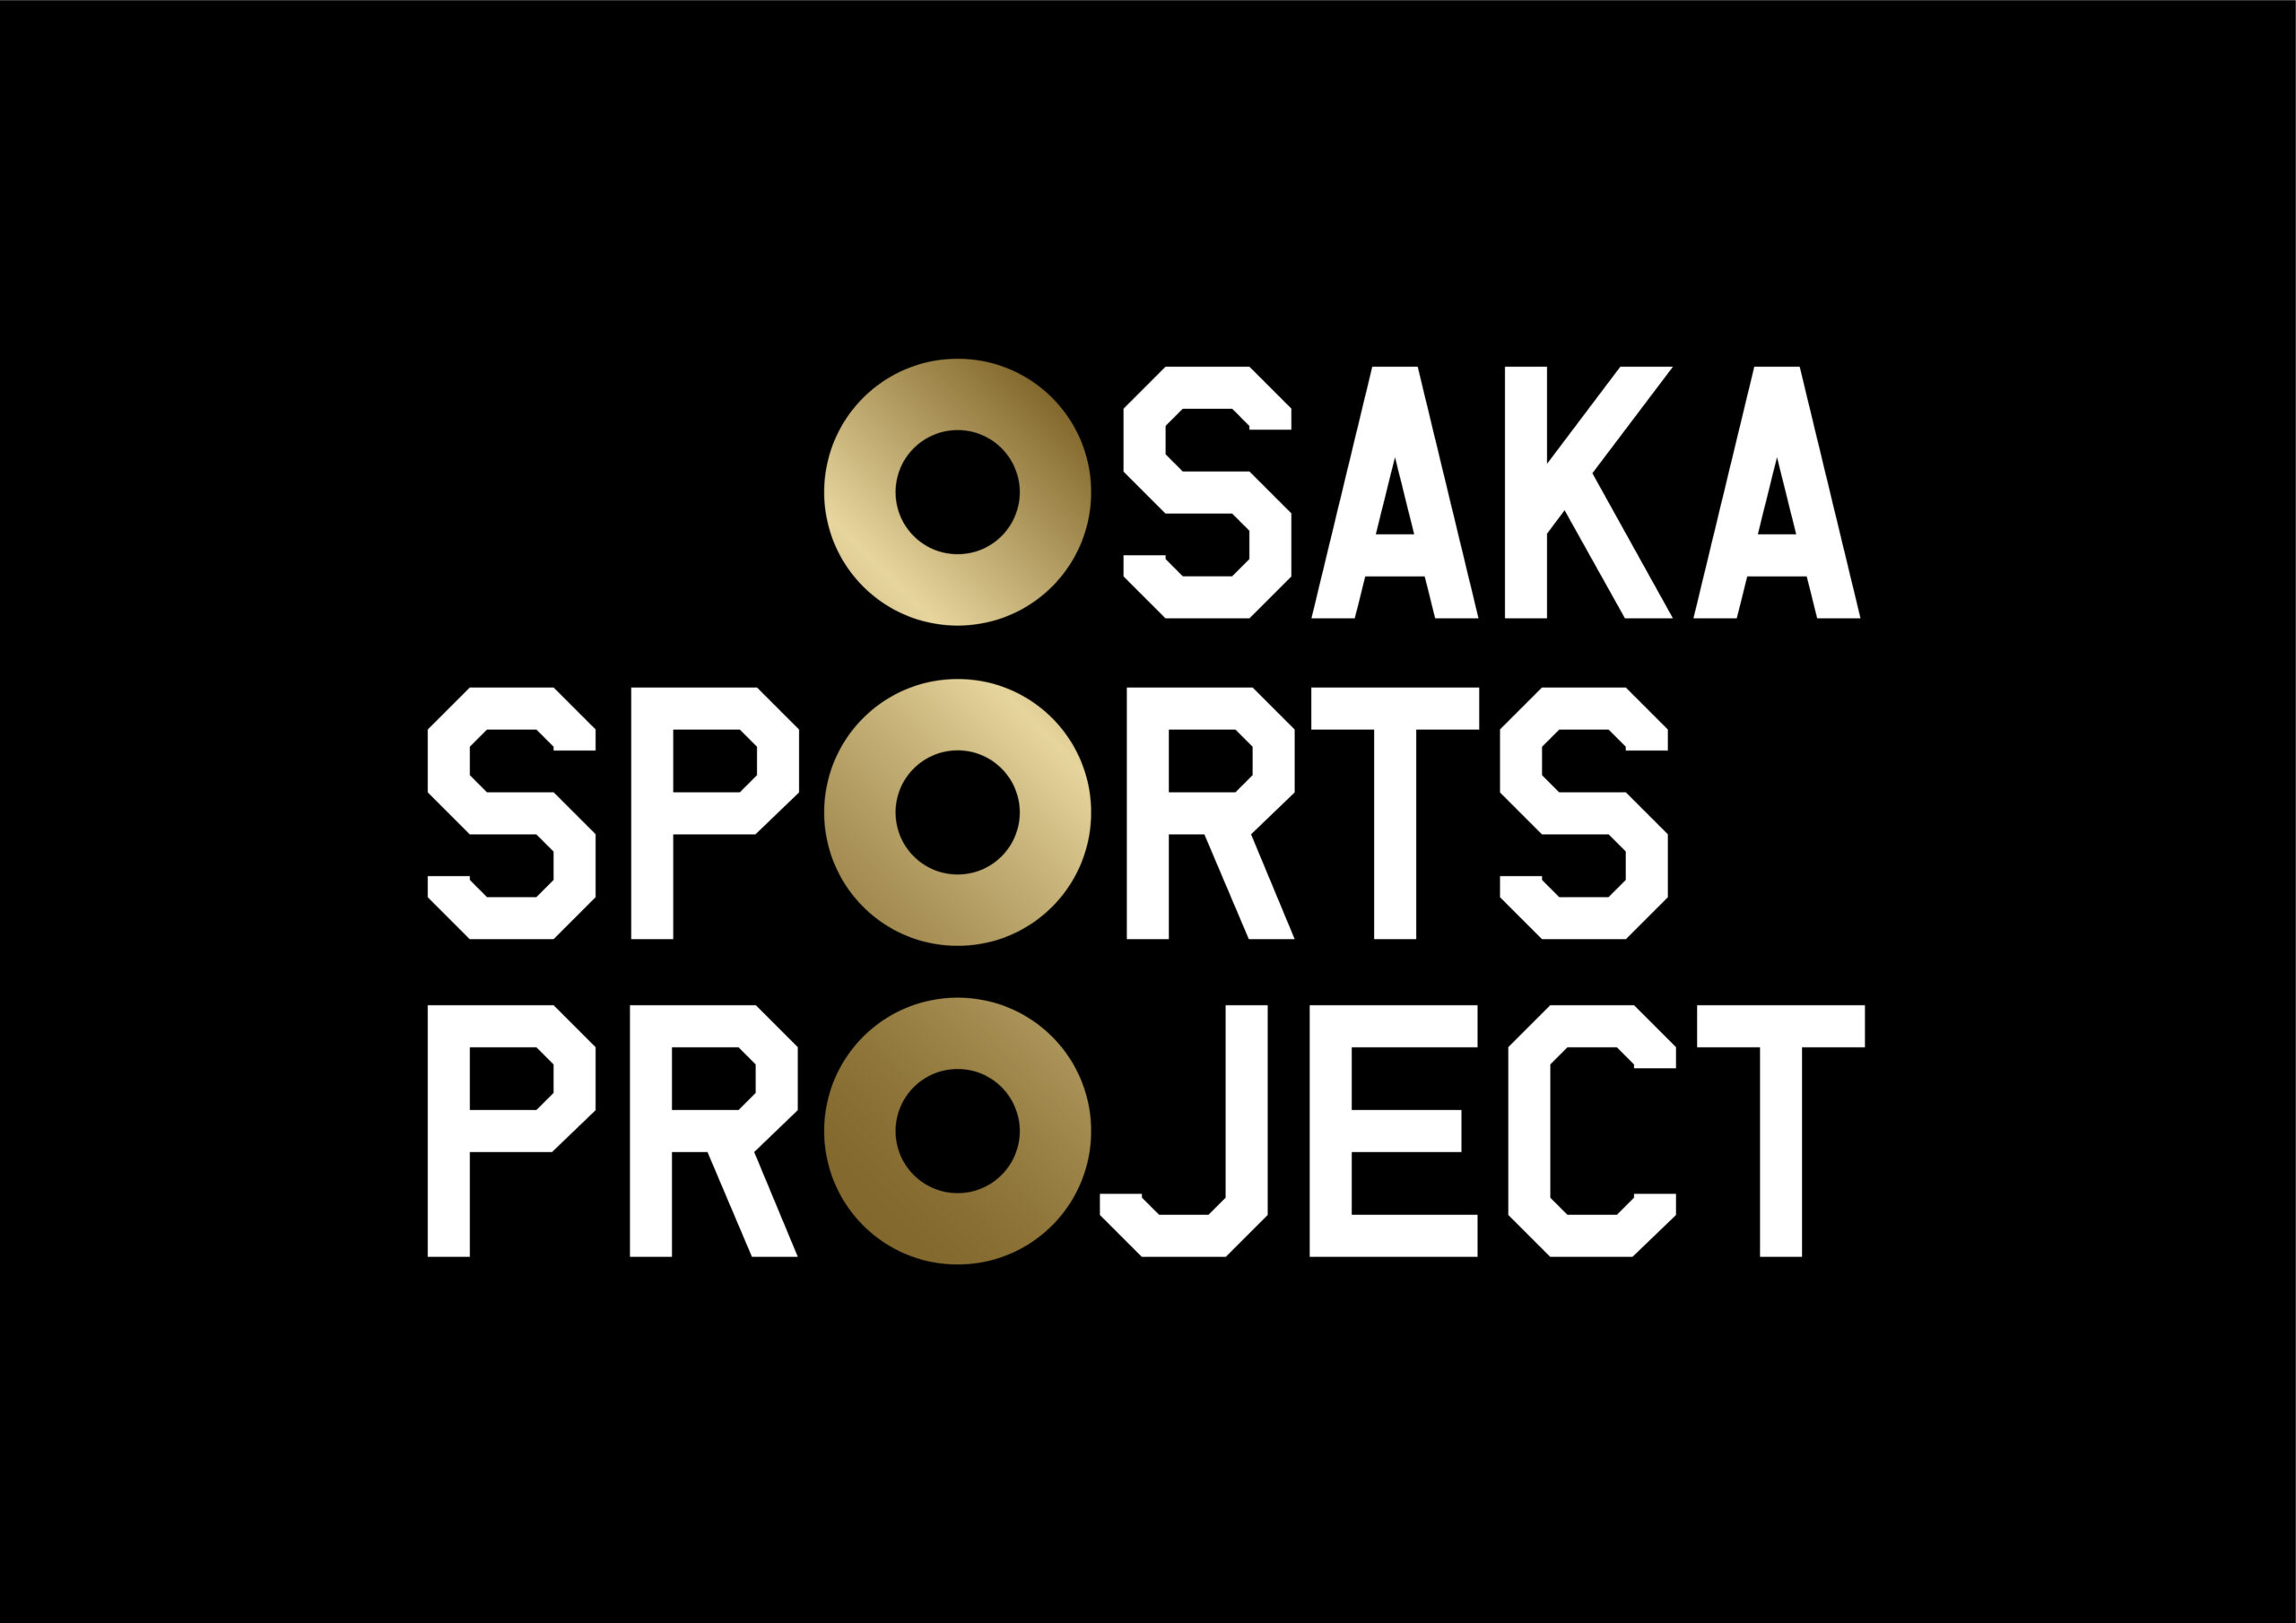 오사카 스포츠 커미션의 설립 총회 및 설립 기념 이벤트 개최 결정!